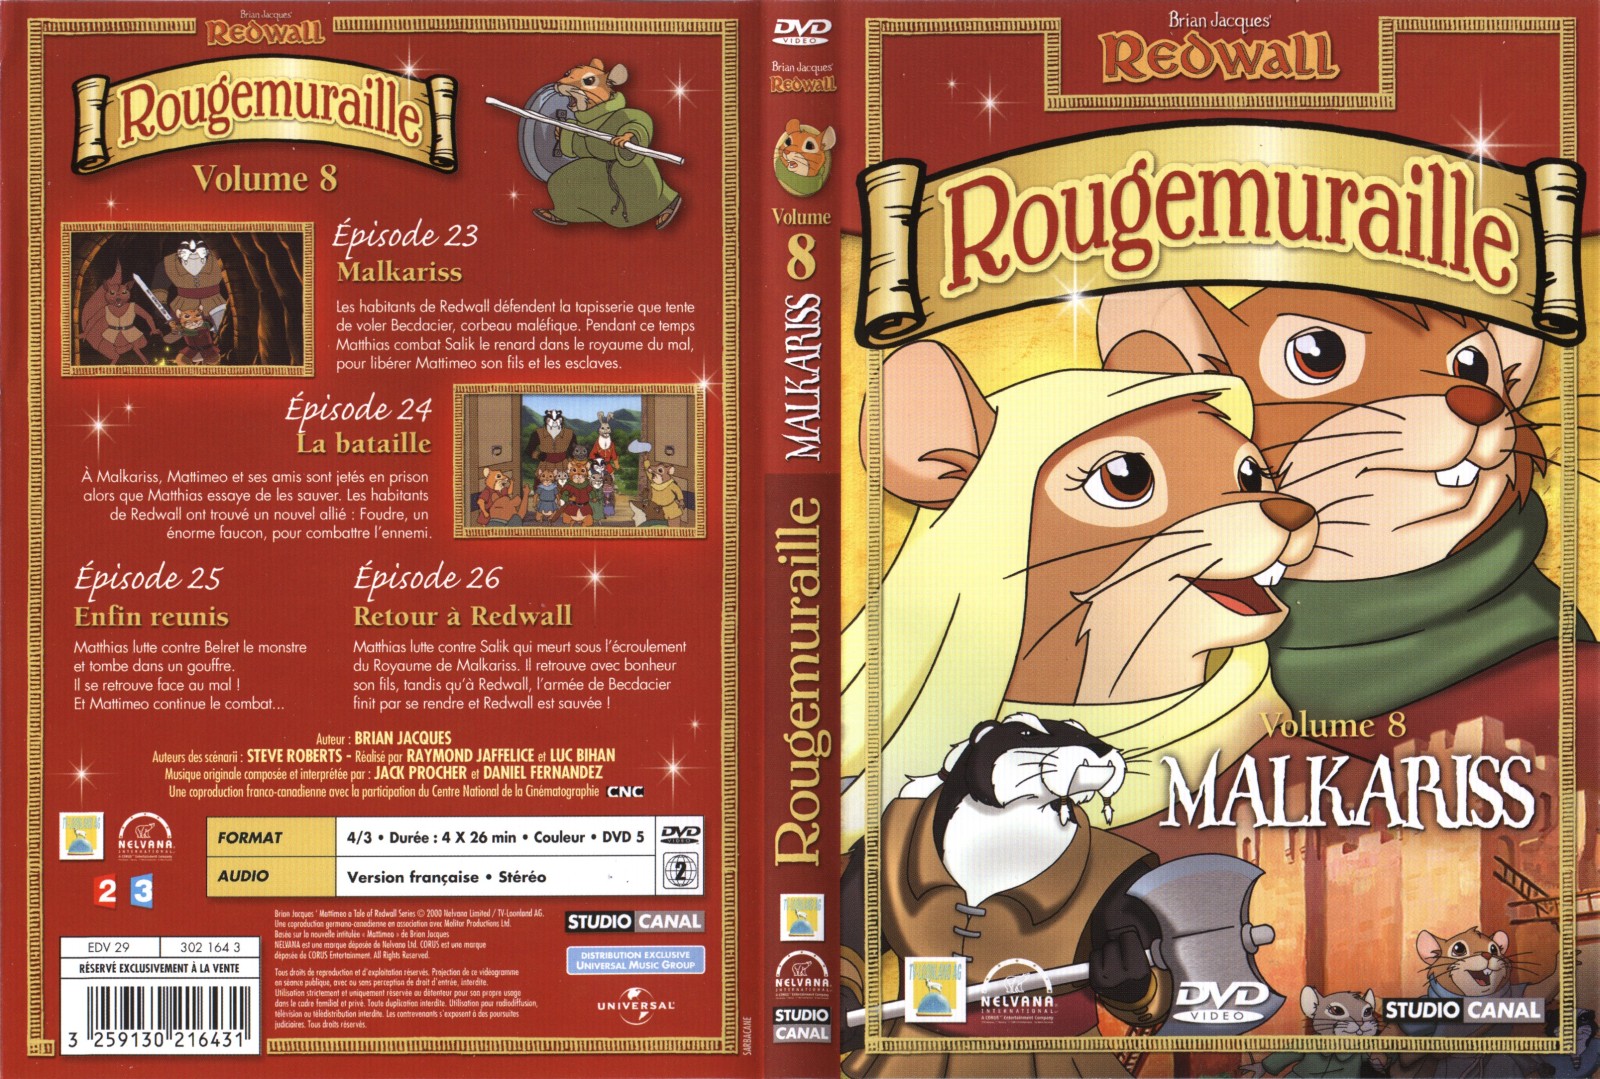 Jaquette DVD Rougemuraille vol 8